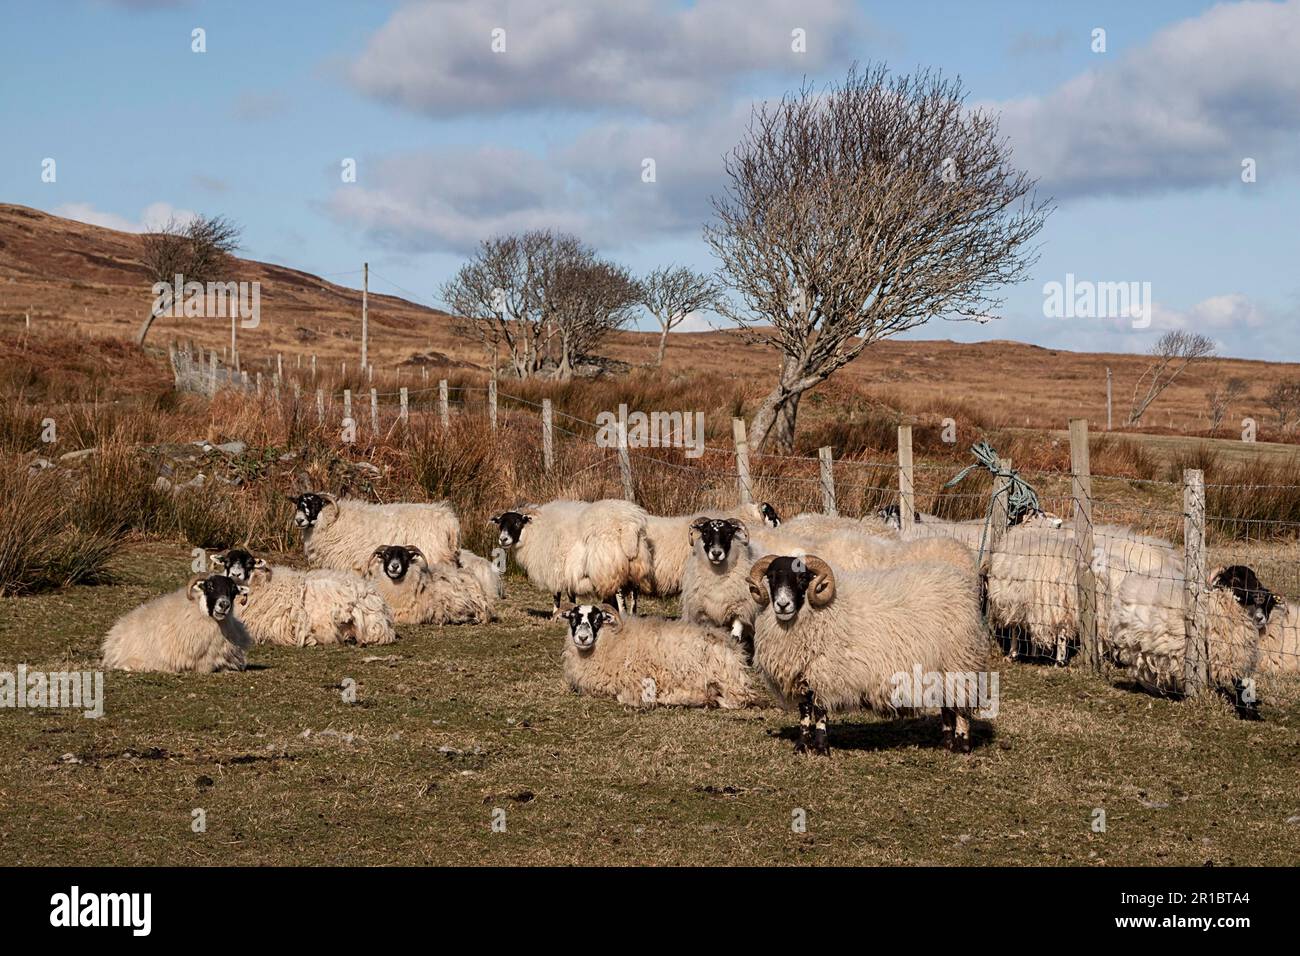 Le Blackface écossais est la race la plus courante de moutons domestiques au Royaume-Uni. Cette race robuste et adaptable se trouve souvent dans des endroits plus exposés Banque D'Images